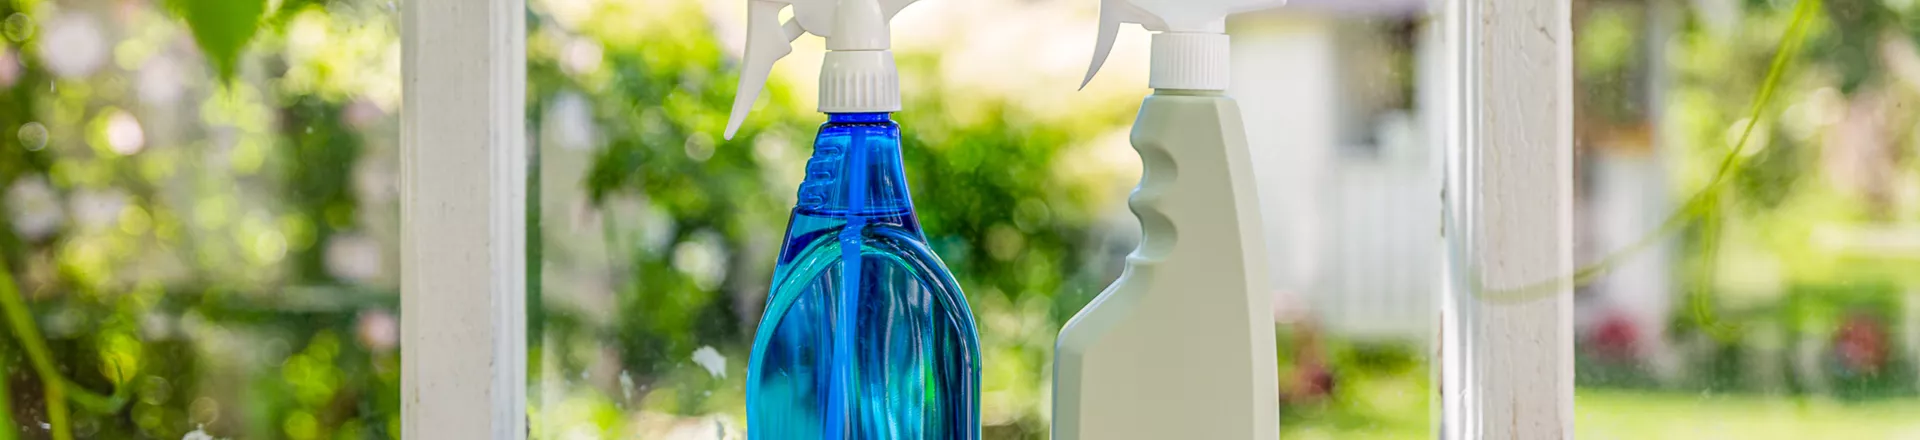 Muoviset suihkepullot sopivat täydellisesti puhdistuspakkaukseksi